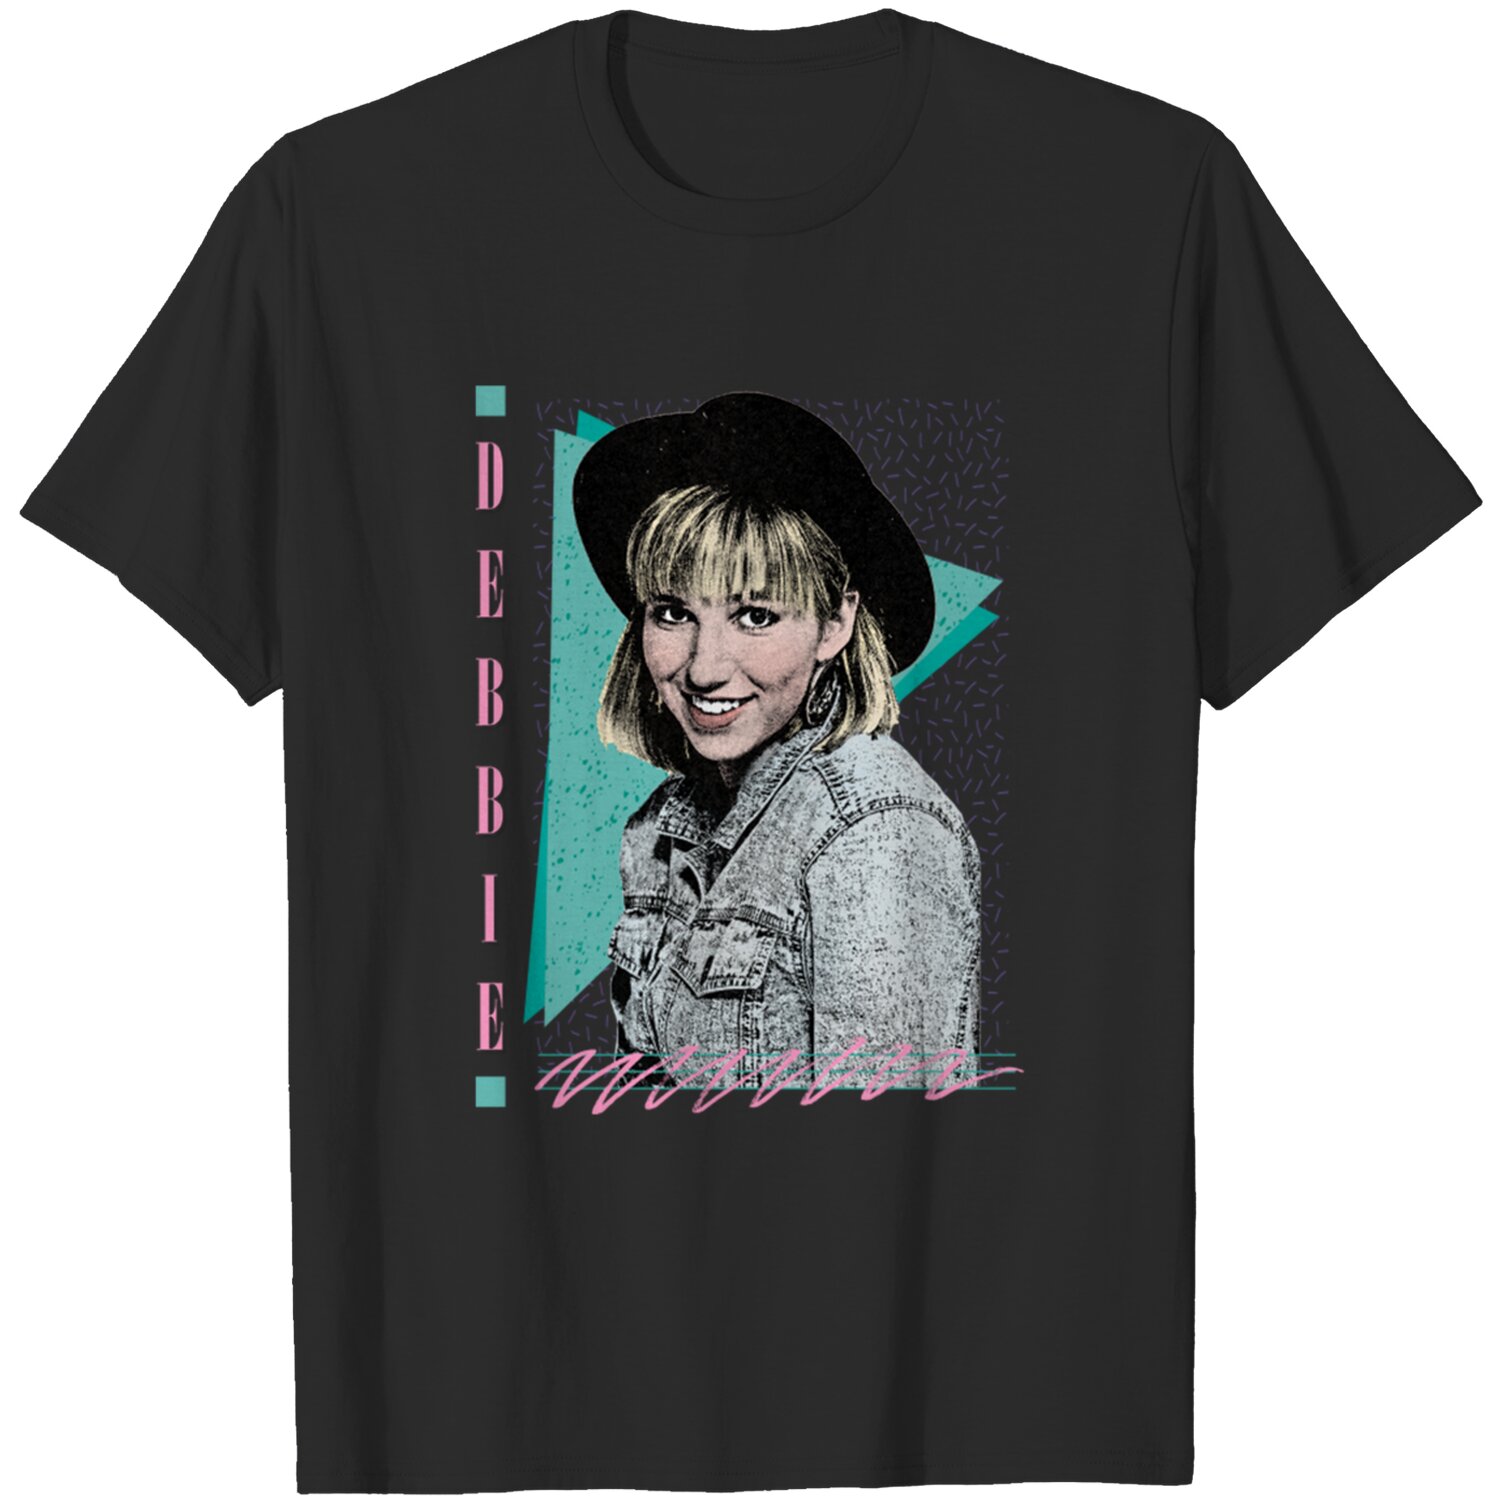 Debbie Gibson 80s Styled Aesthetic Design - 80s Aesthetic - T-Shirt